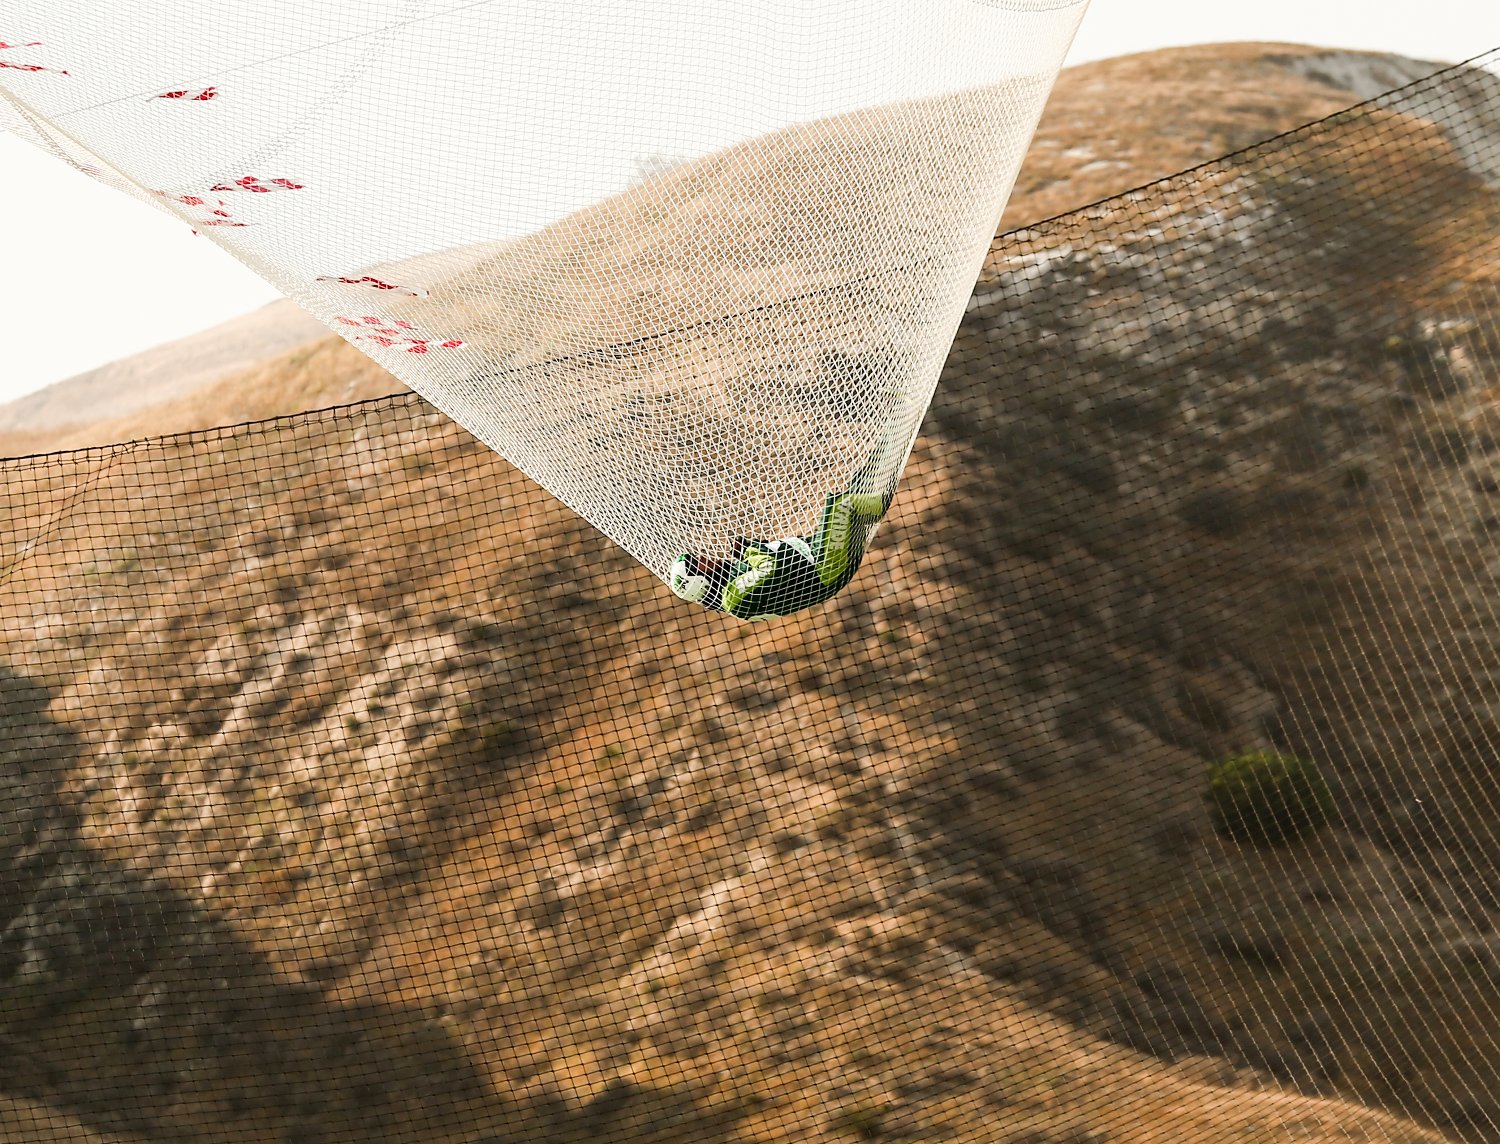 El salto de récord sin paracaídas a más de 7.000 metros de altura